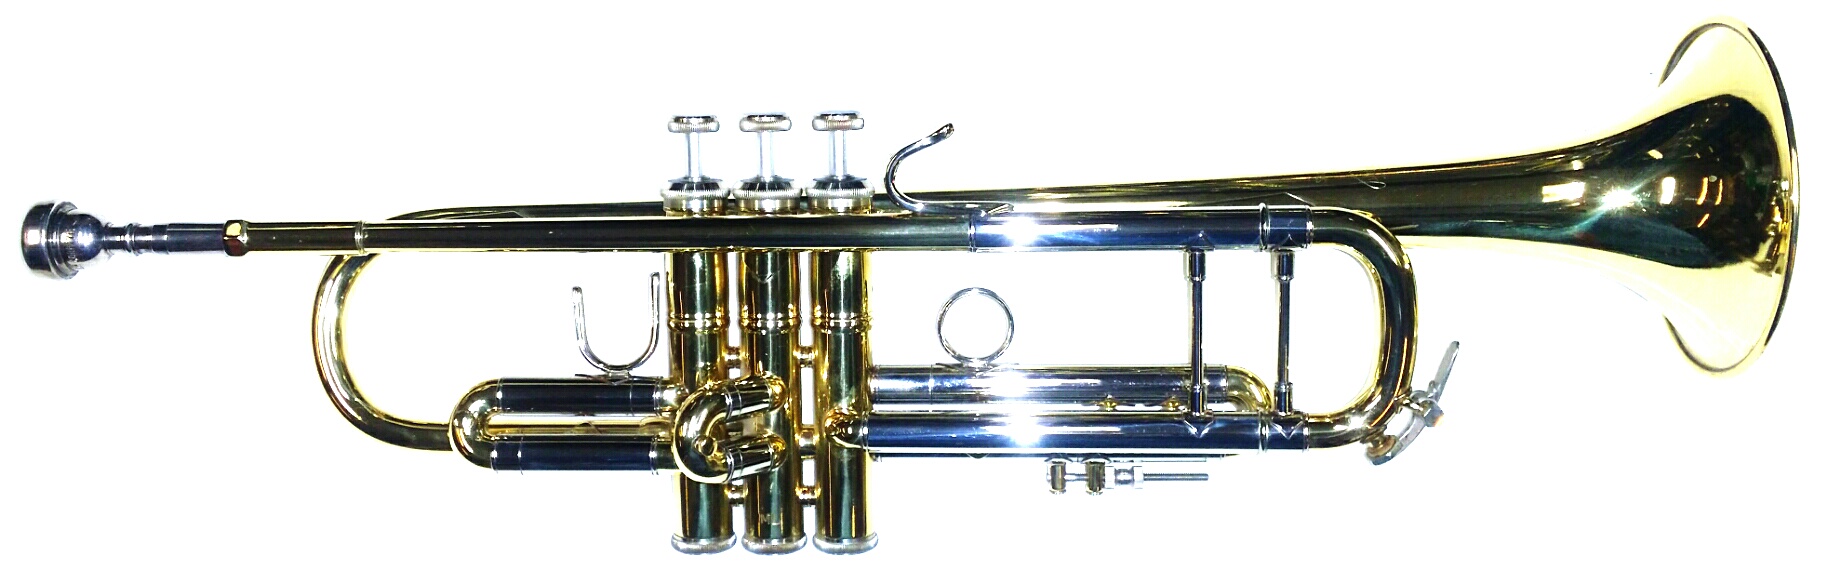 Bb-Trompete Jazz Trompete Messing Brass Blasinstrument Koffer Mundstück N7S7 